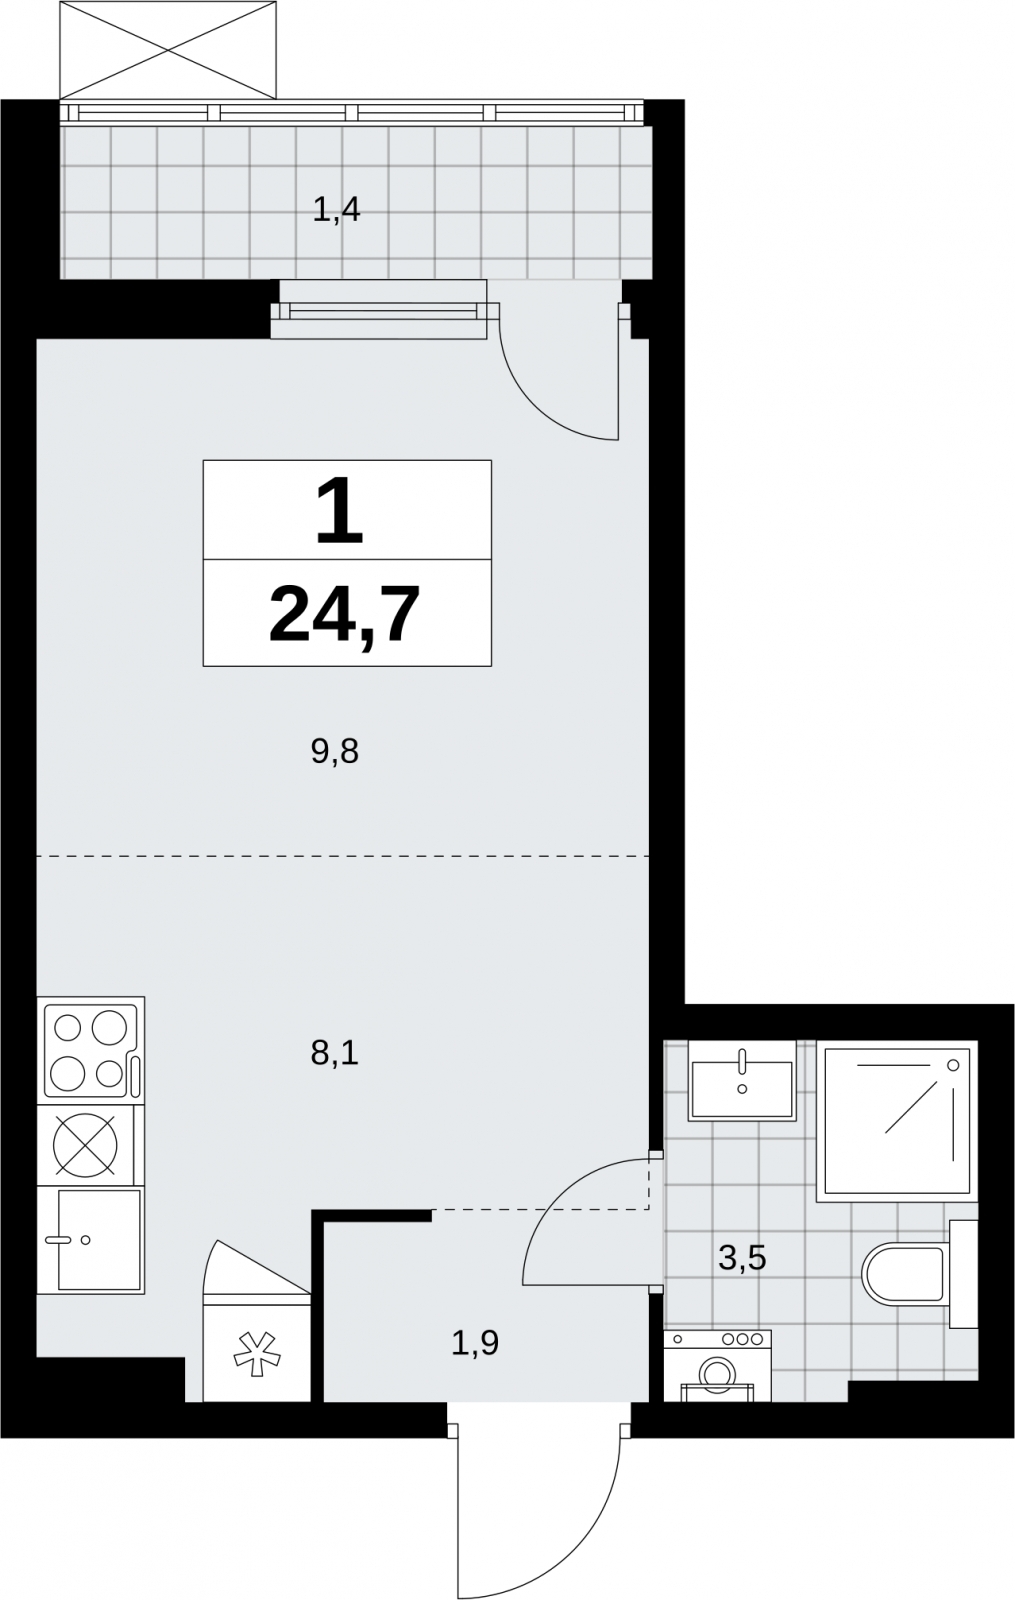 Продается 1-комн. квартира с отделкой в новом жилом комплексе, недалеко от метро